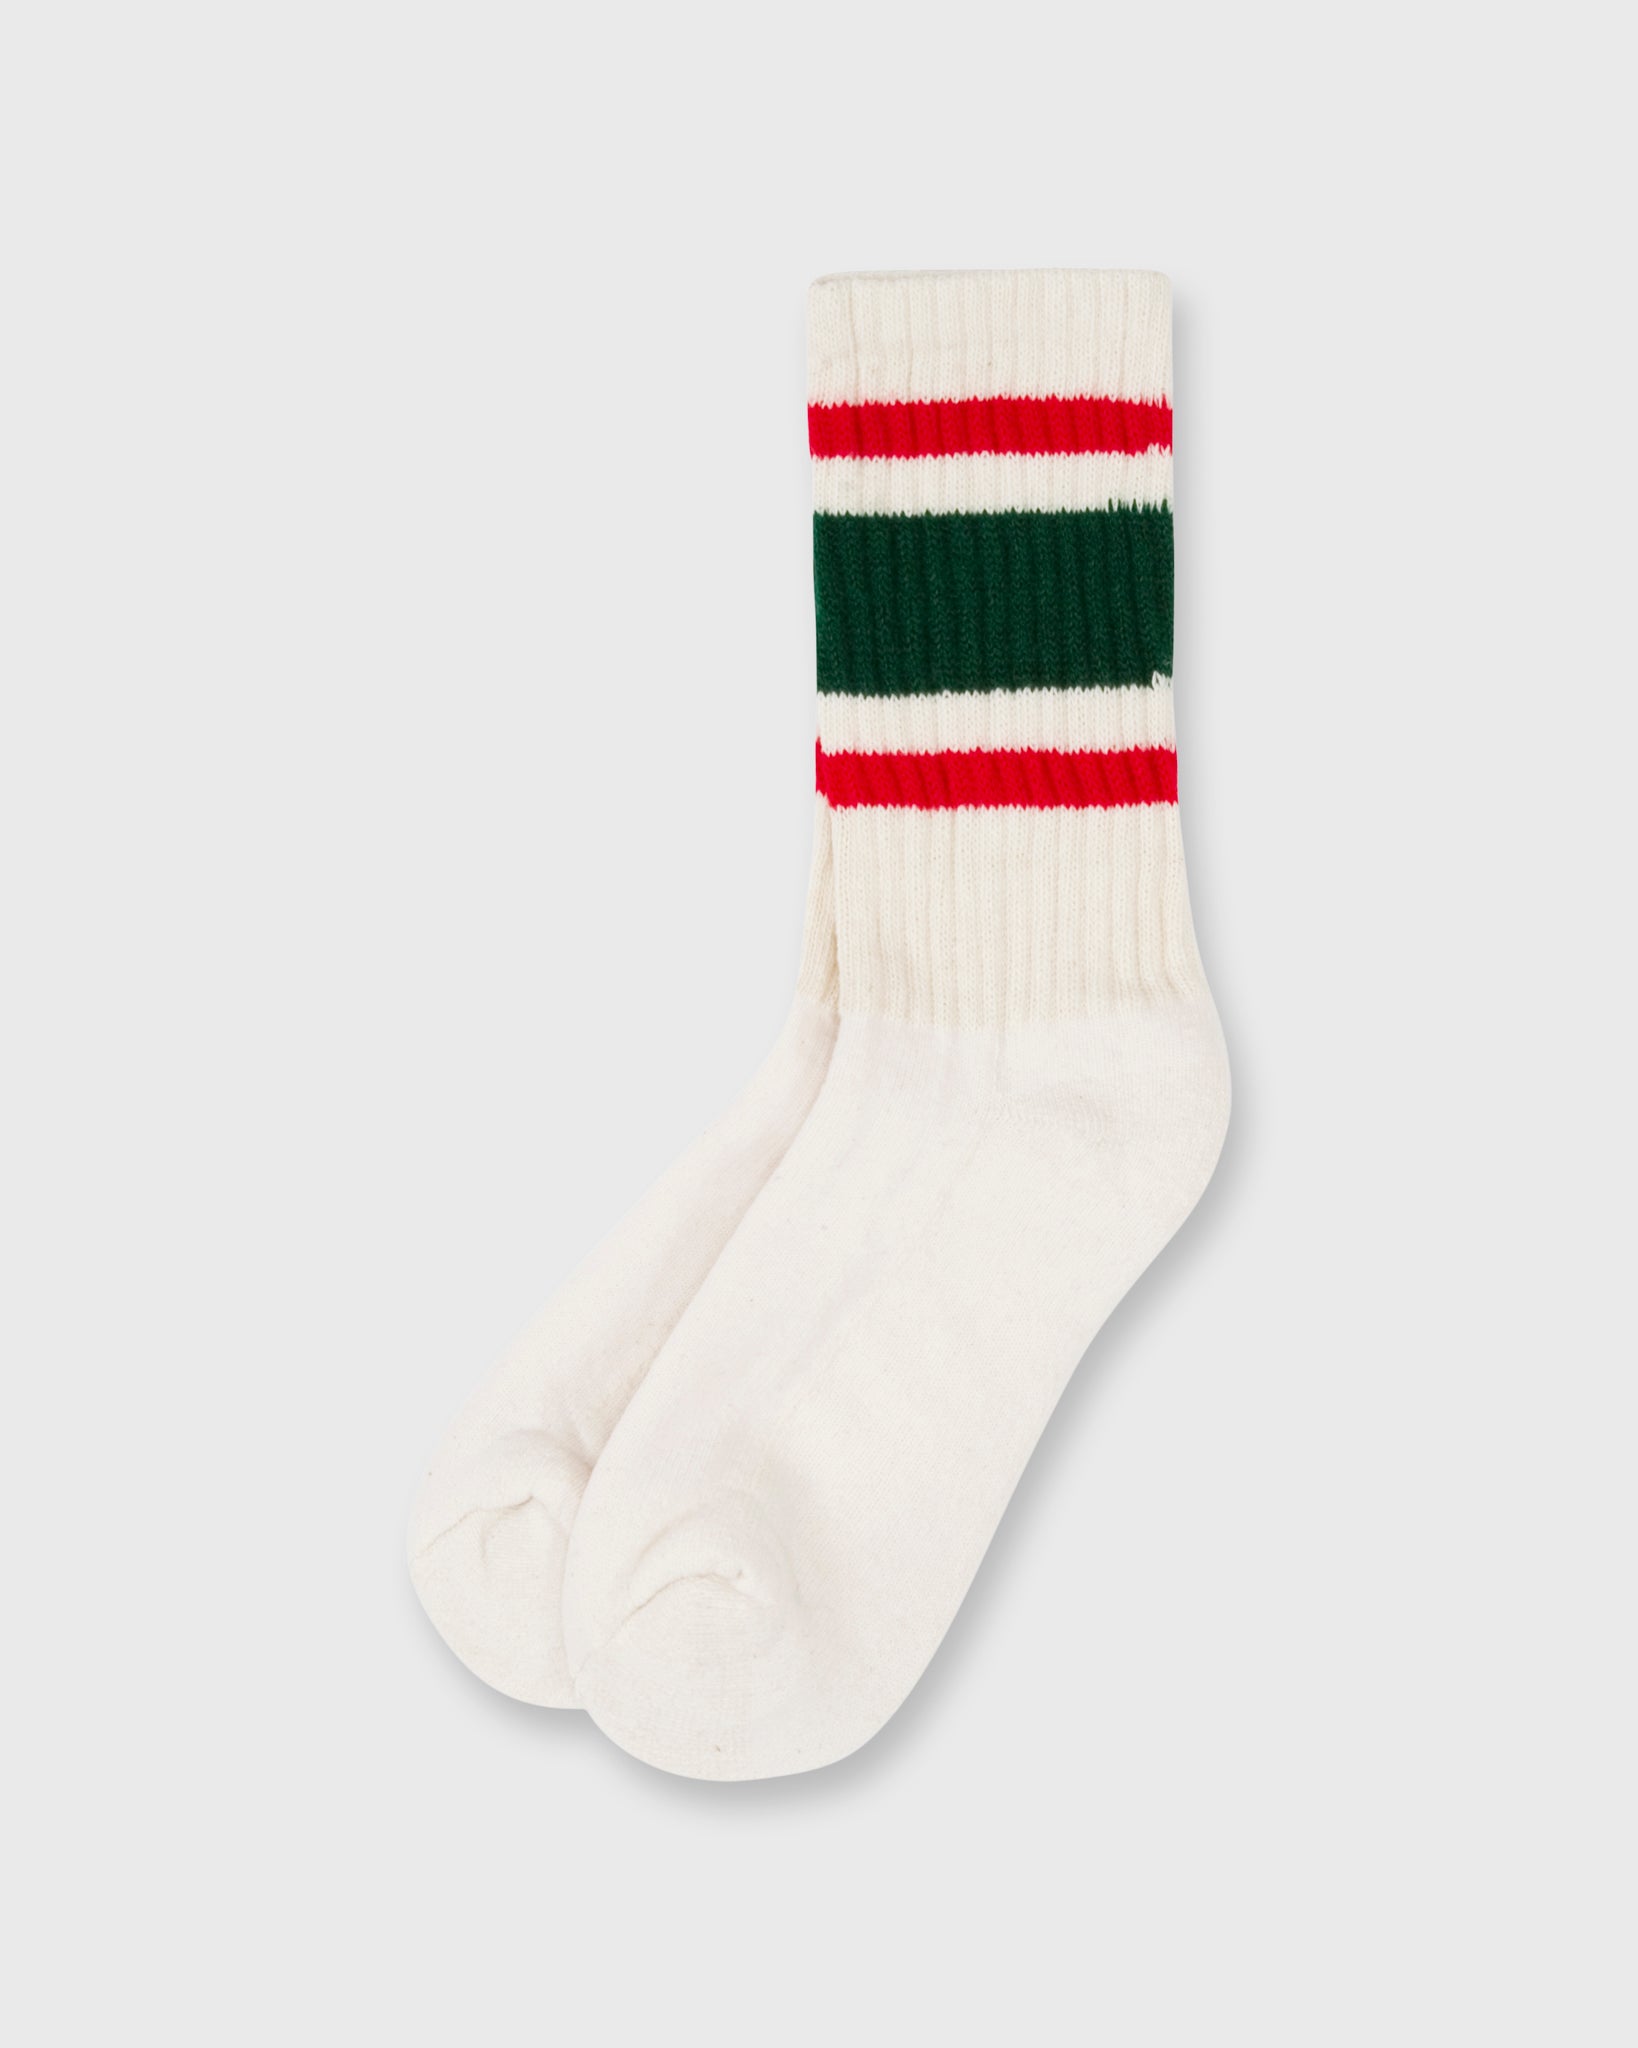 Retro Stripe Socks in Green/Red